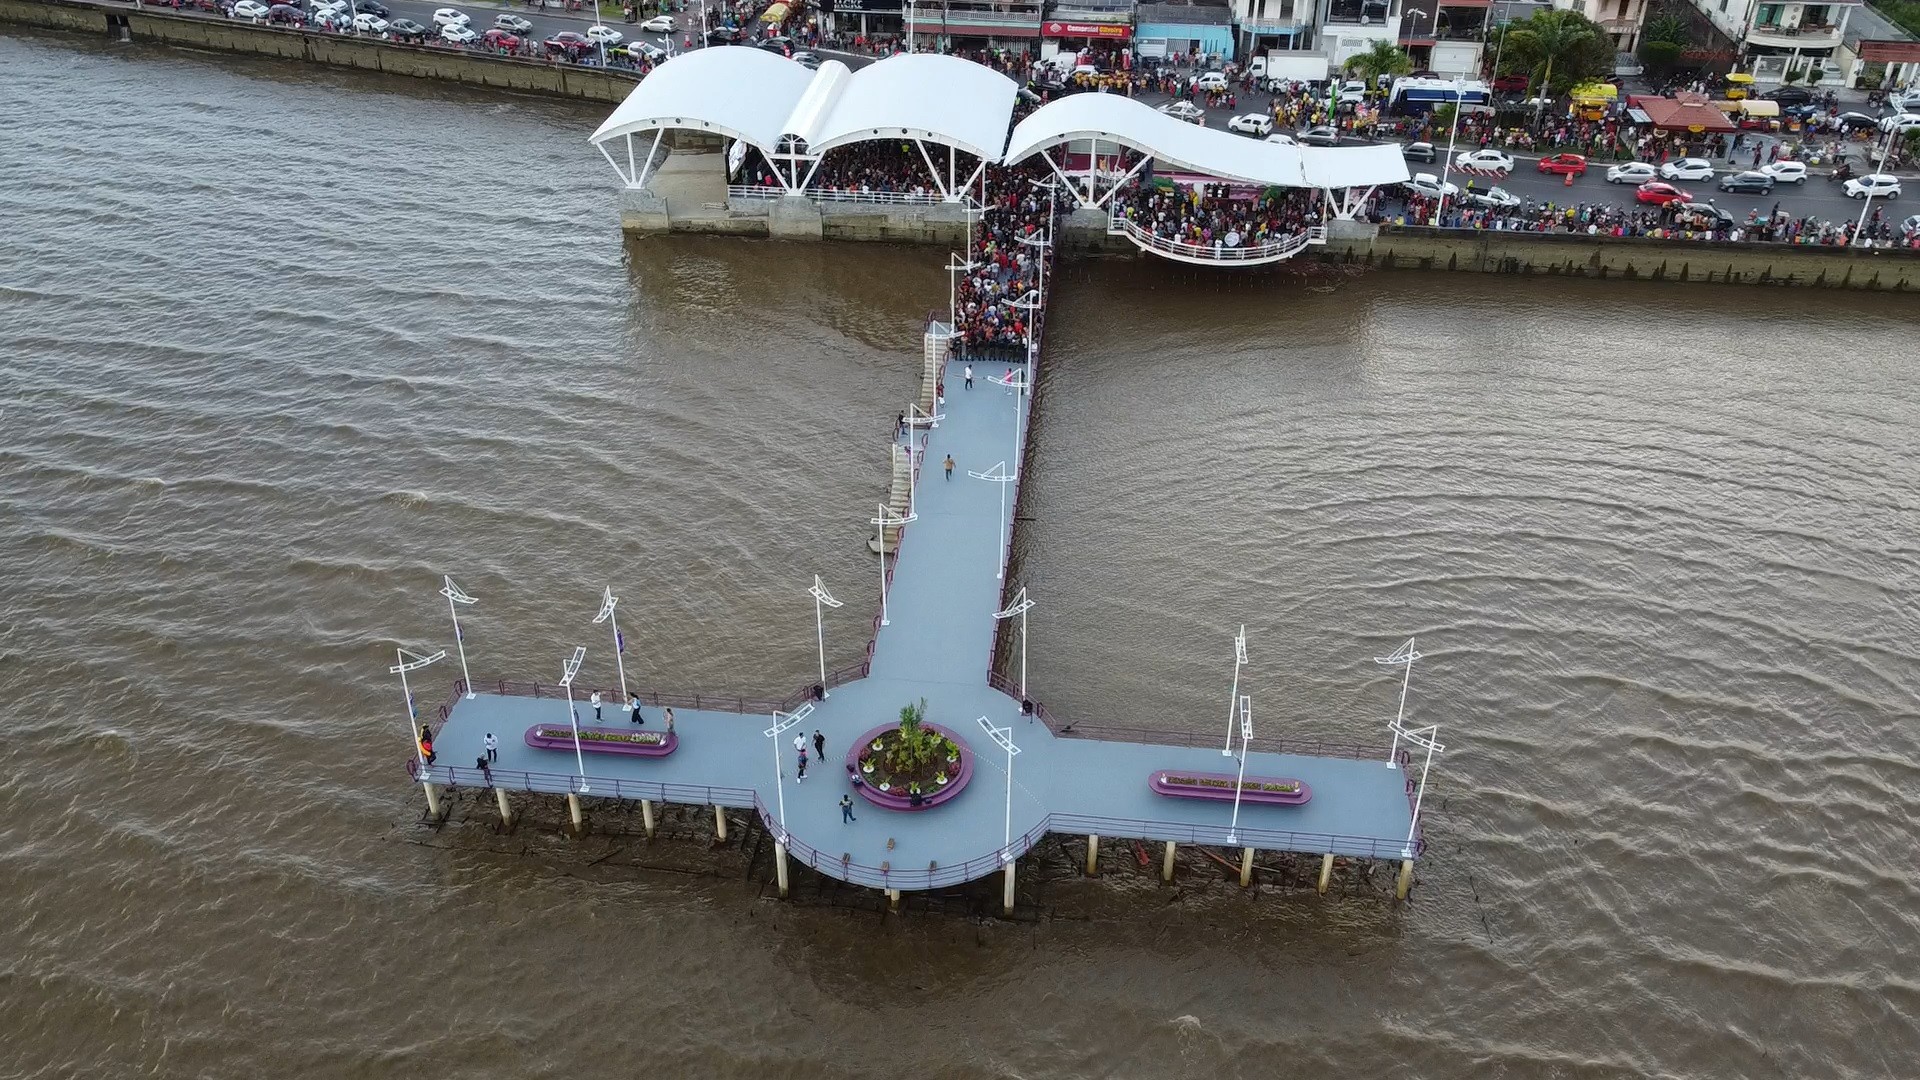 Nova Rampa do Açaí é inaugurada em Macapá com espaços gastronômicos e turísticos